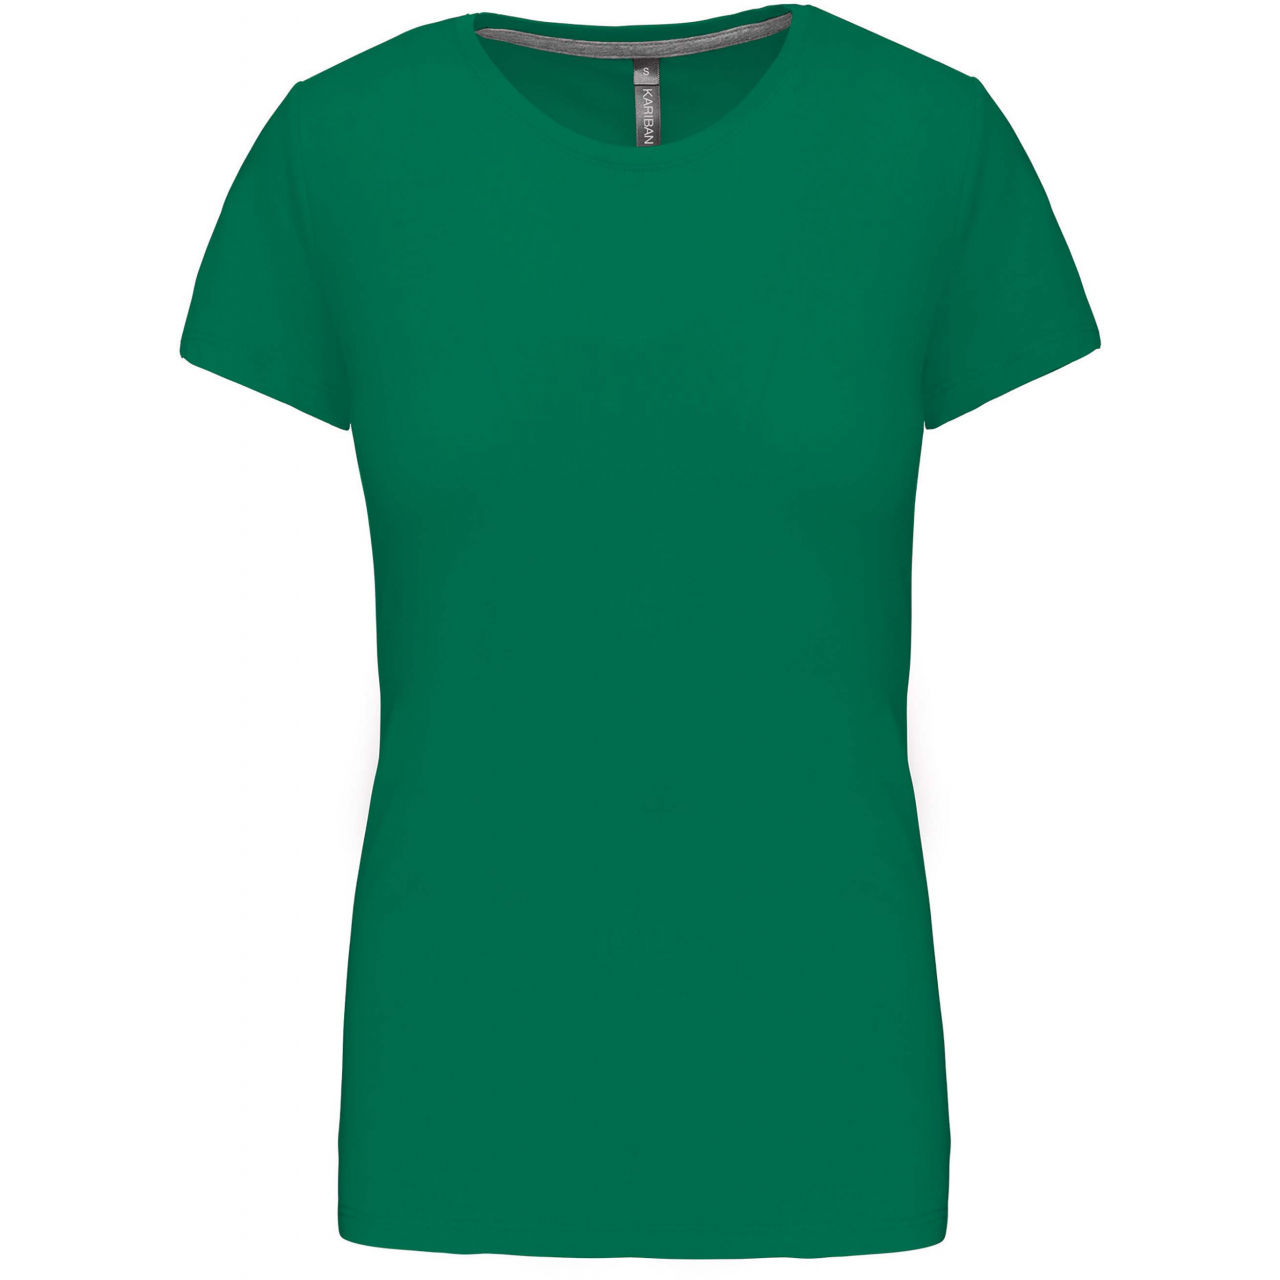 Dámské tričko Kariban s krátkým rukávem - zelené, XL